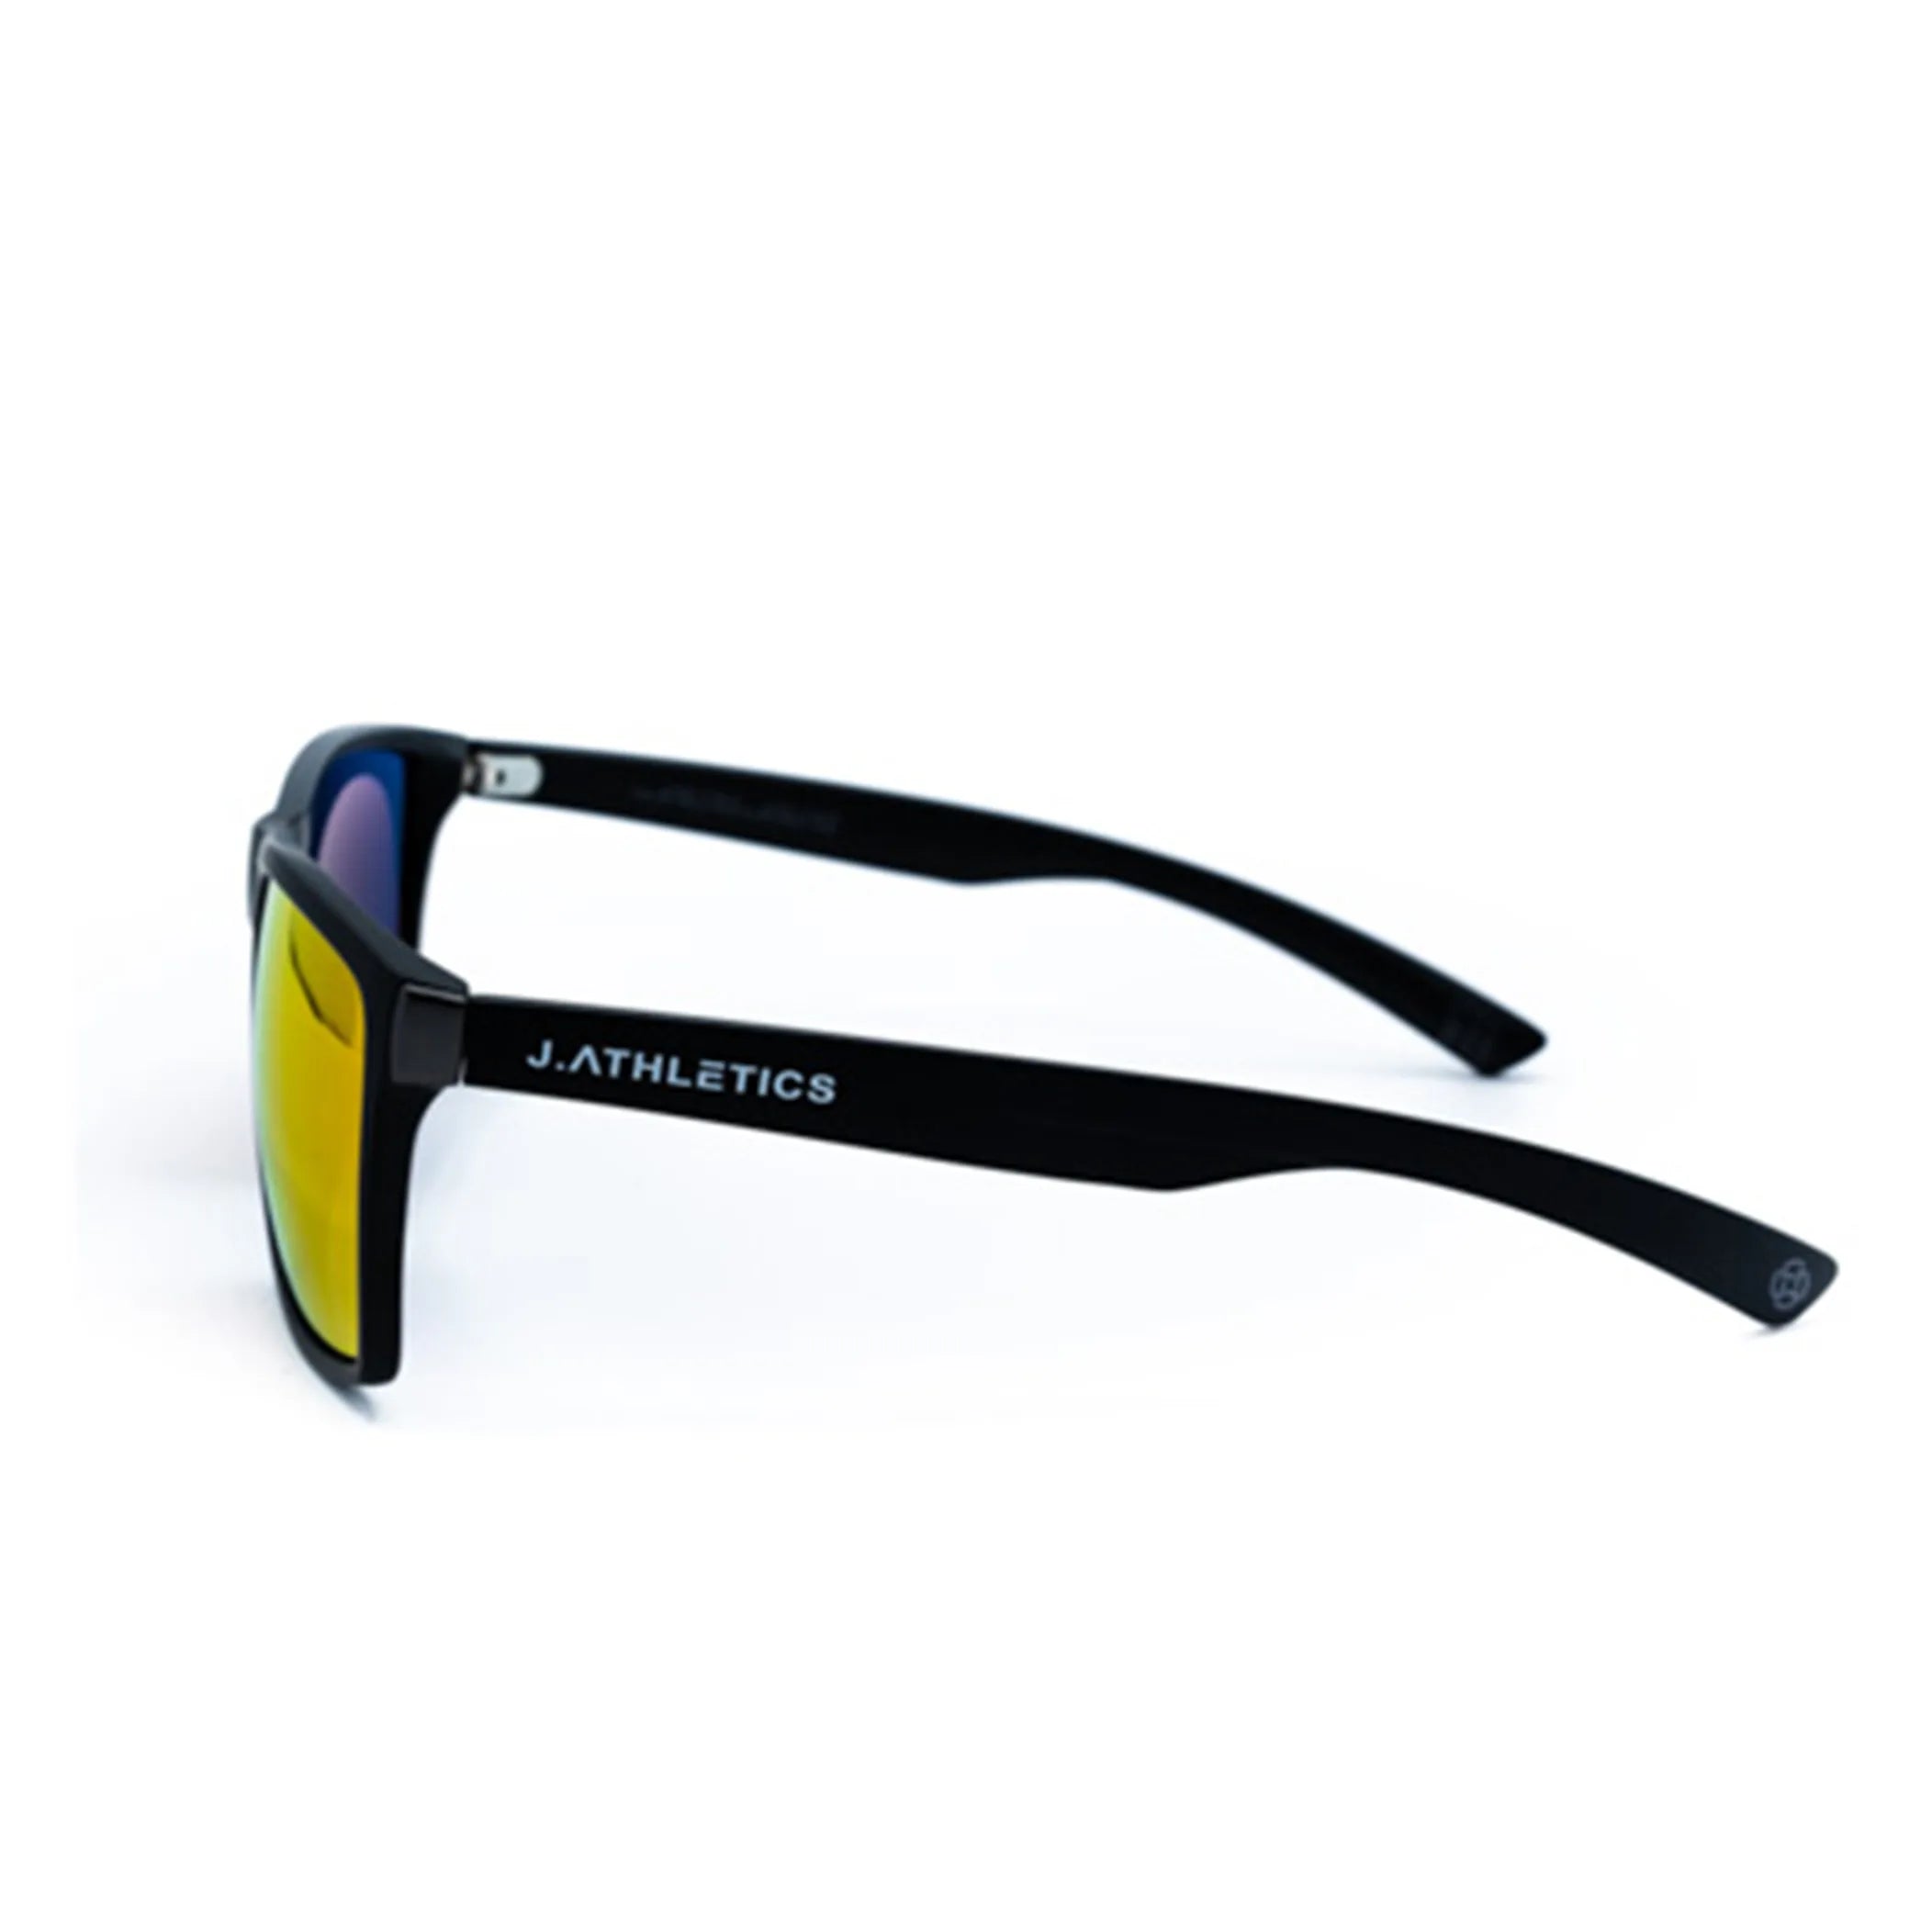 J. Athletics Hebi Sunglasses 57-18 - Clear-Sea